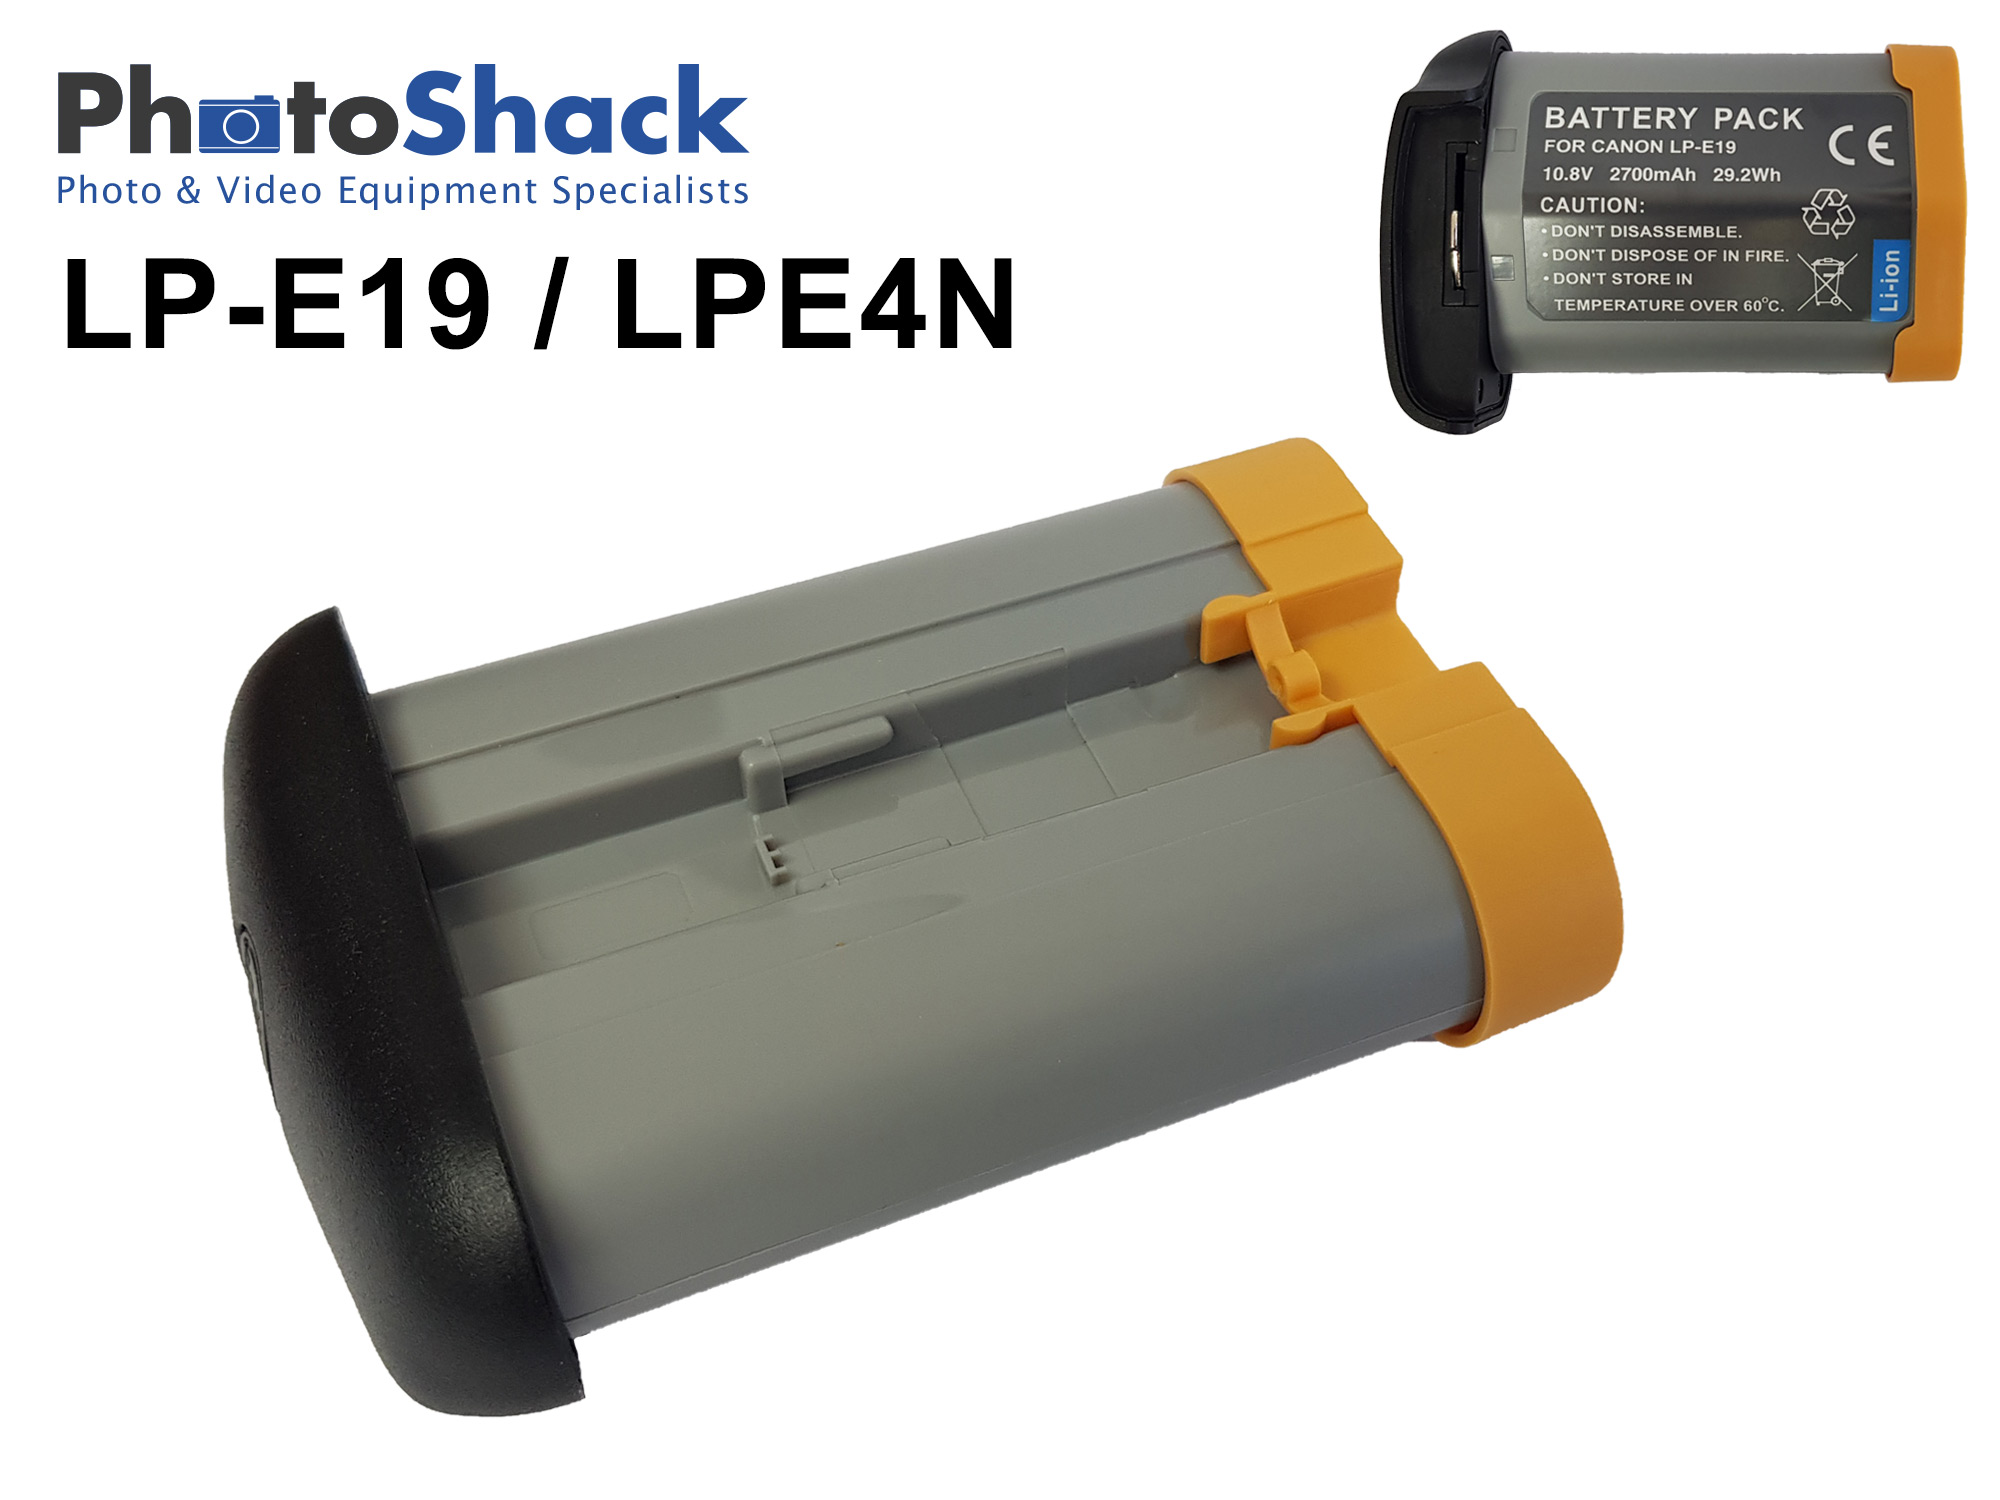 LP-E4N / LP-E19 Canon Battery for EOS 1D X, EOS 1D Mark IV, EOS 1D Mark III, EOS 1Ds Mark III